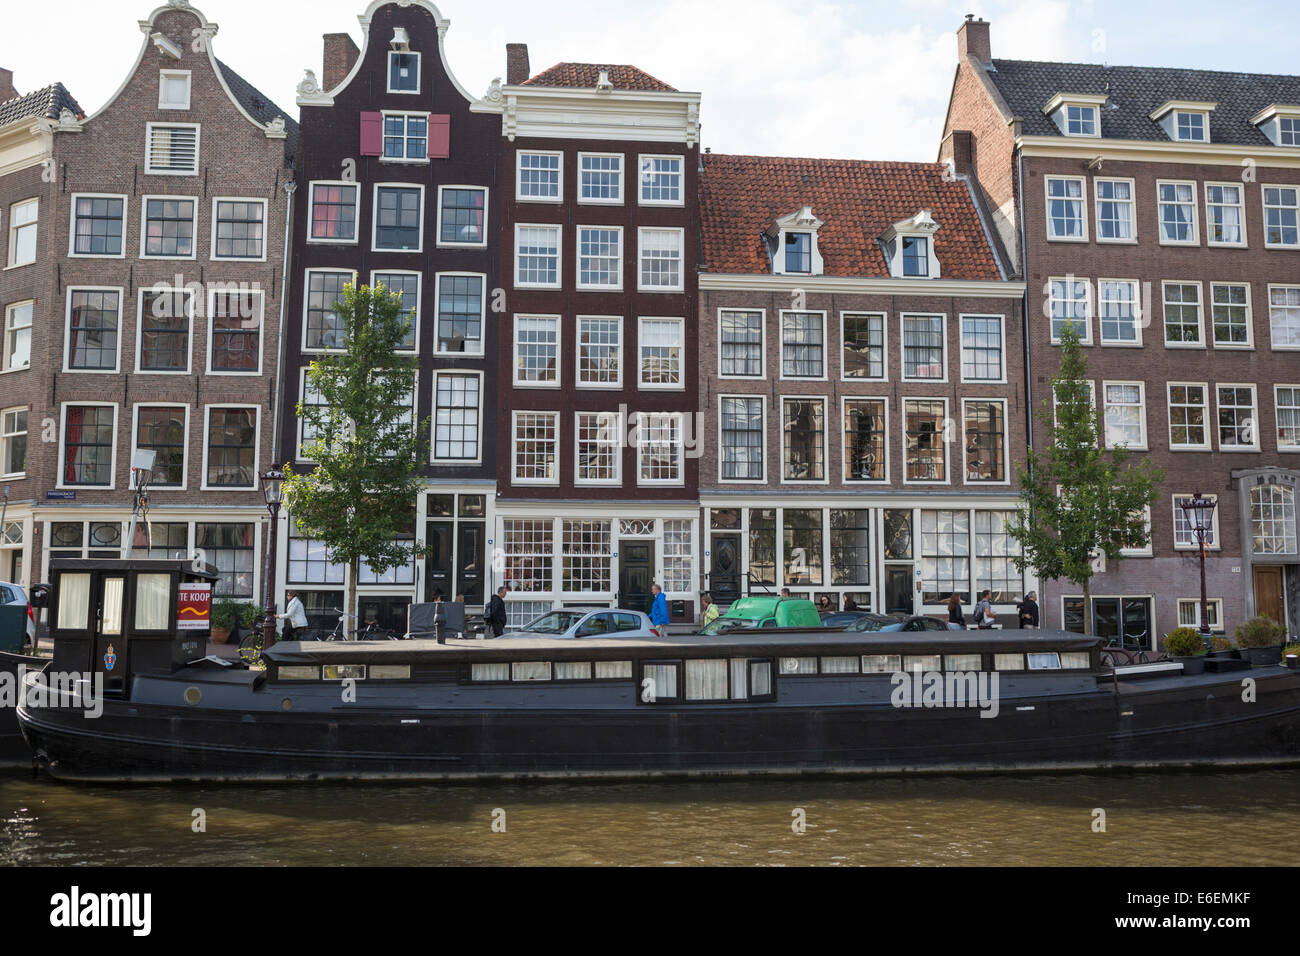 Blick auf einen der Kanäle mit einem Hausboot und historische Häuser im berühmten Stadtteil 'Jordaan' in Amsterdam. Stockfoto